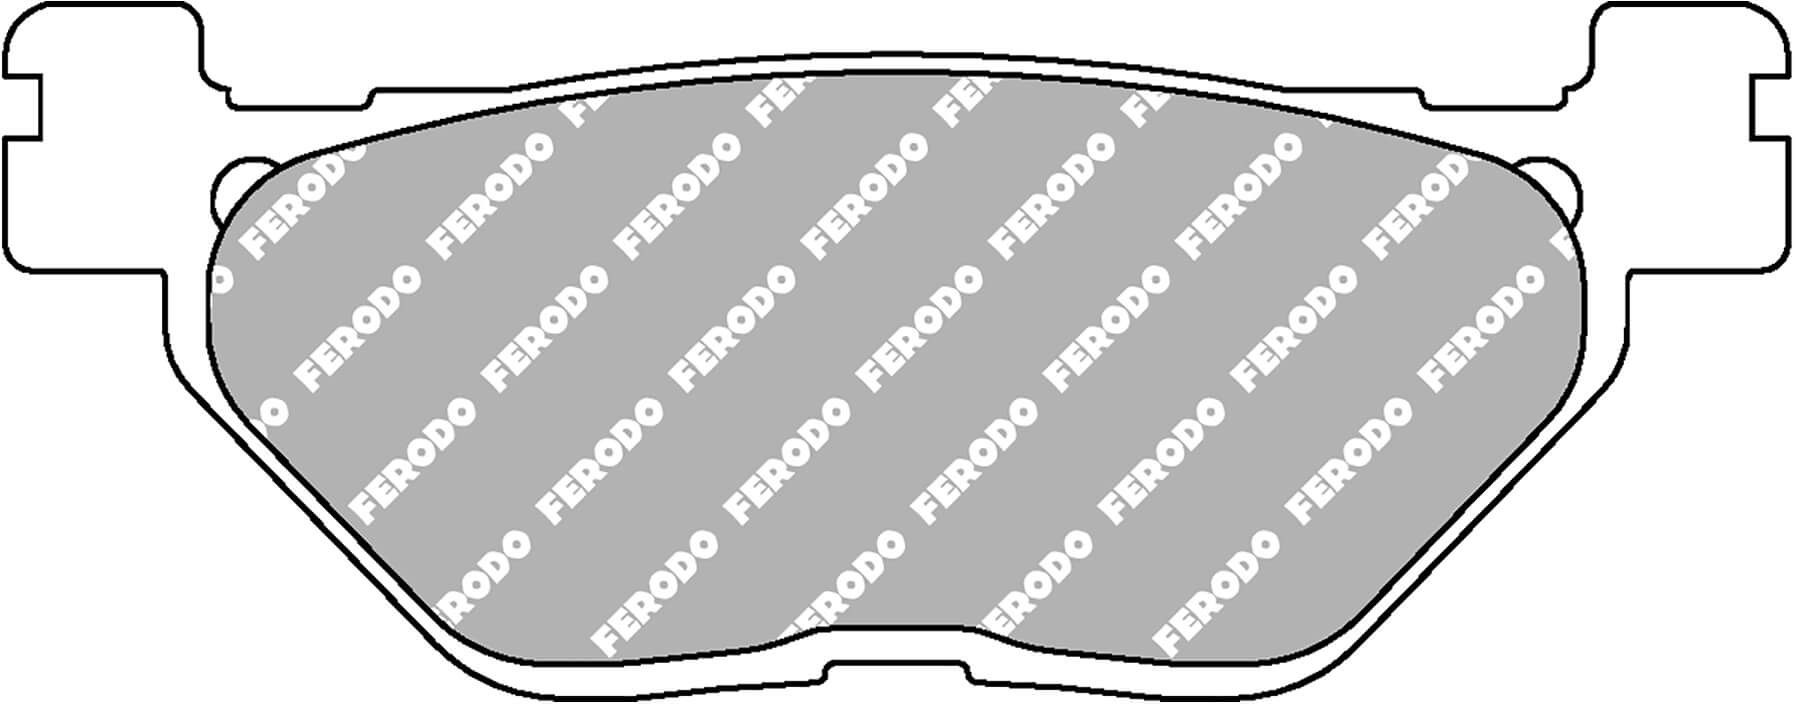 FERODO Sinter Bremsbelag FDB 2156 ST